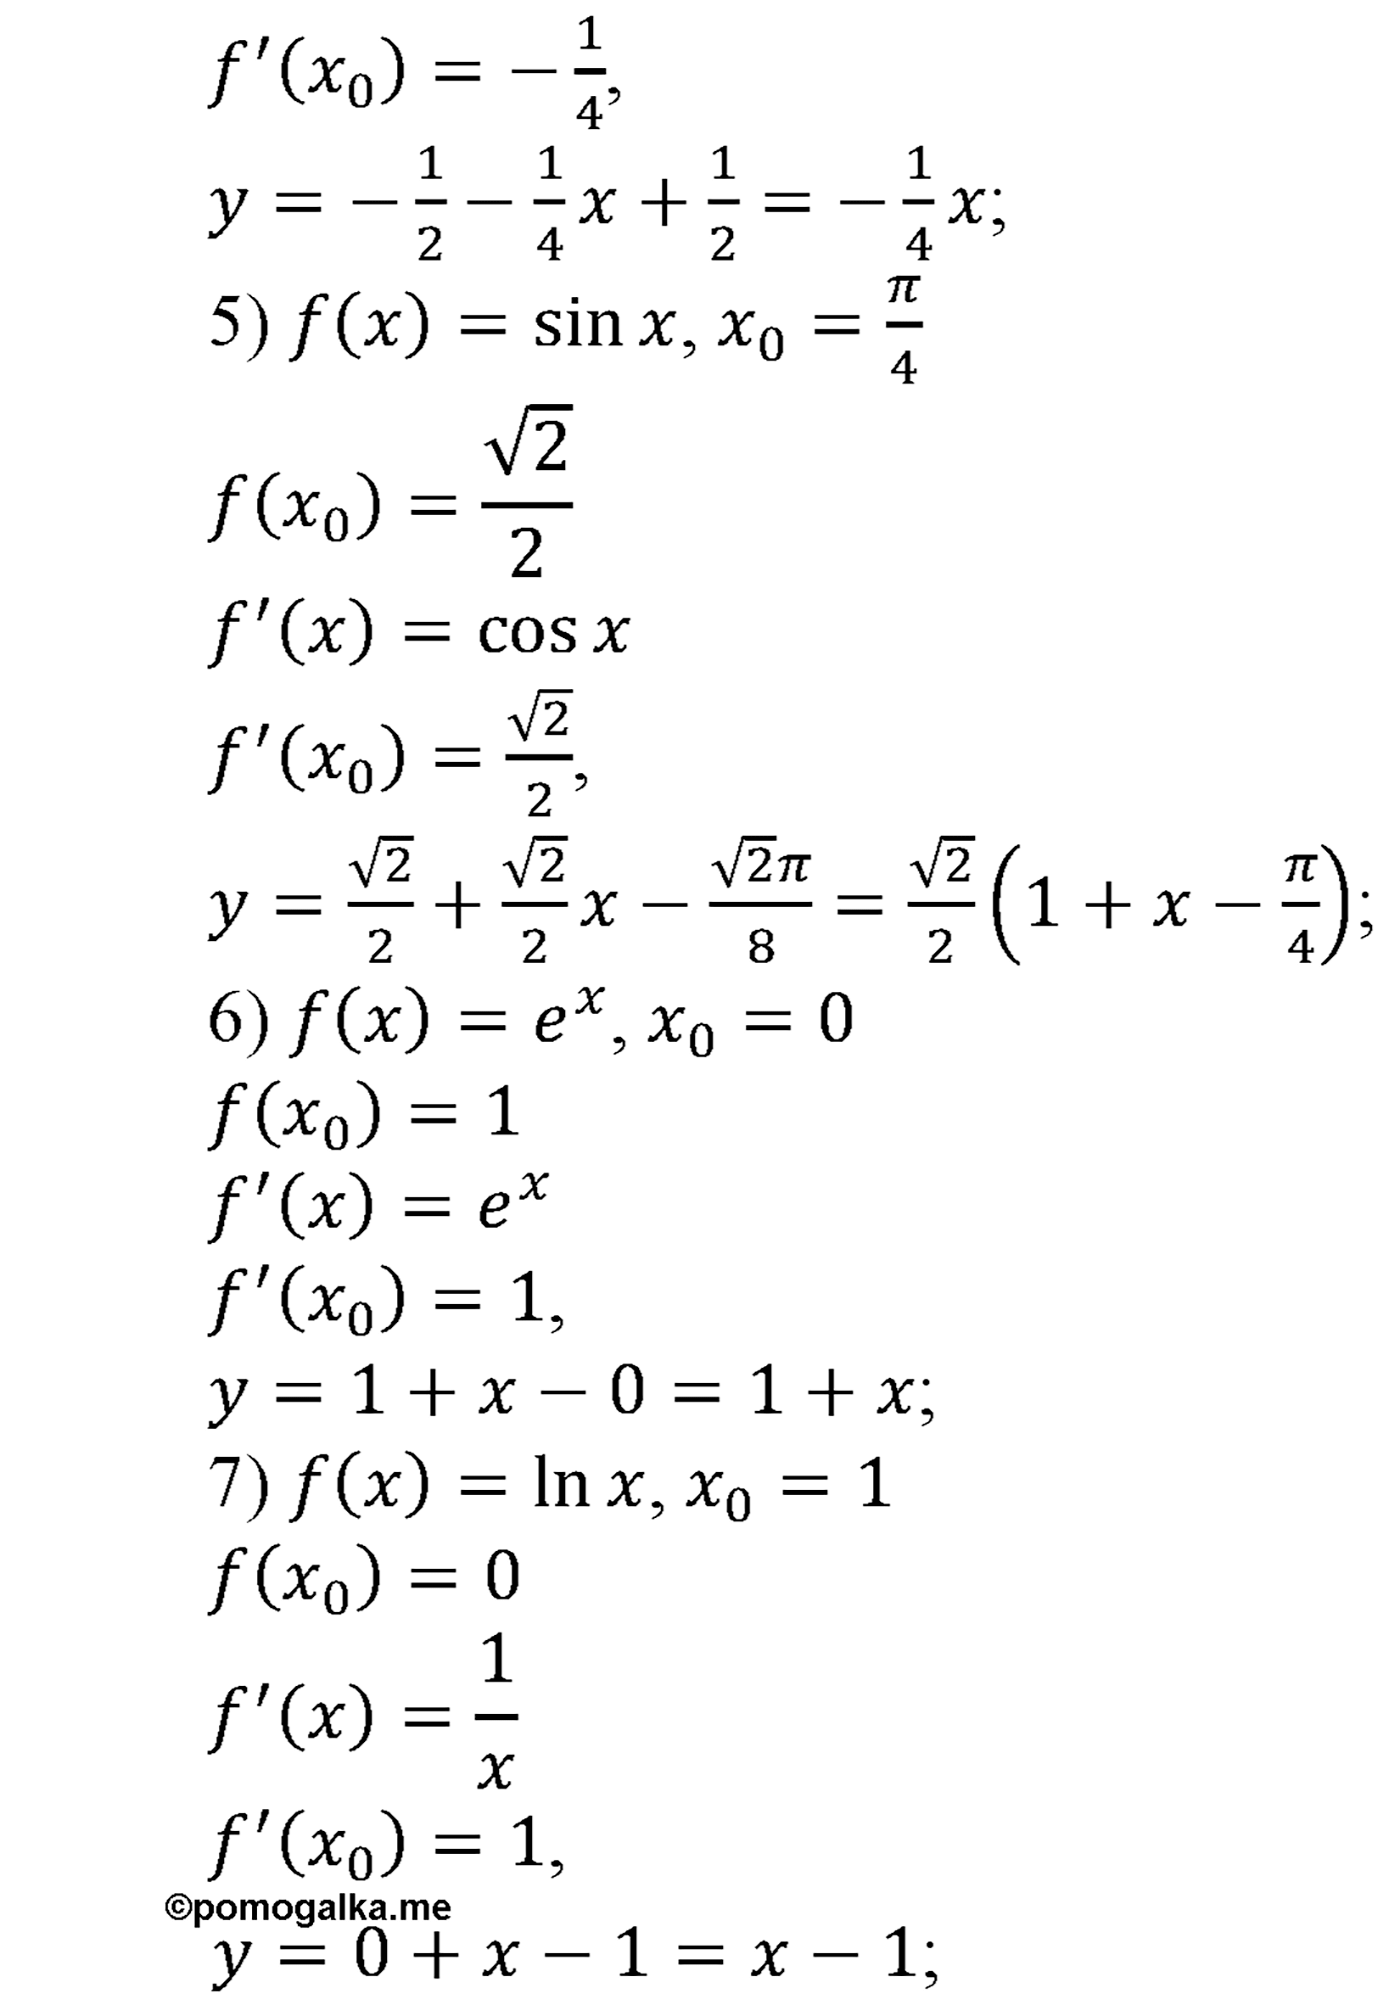 разбор задачи №860 по алгебре за 10-11 класс из учебника Алимова, Колягина